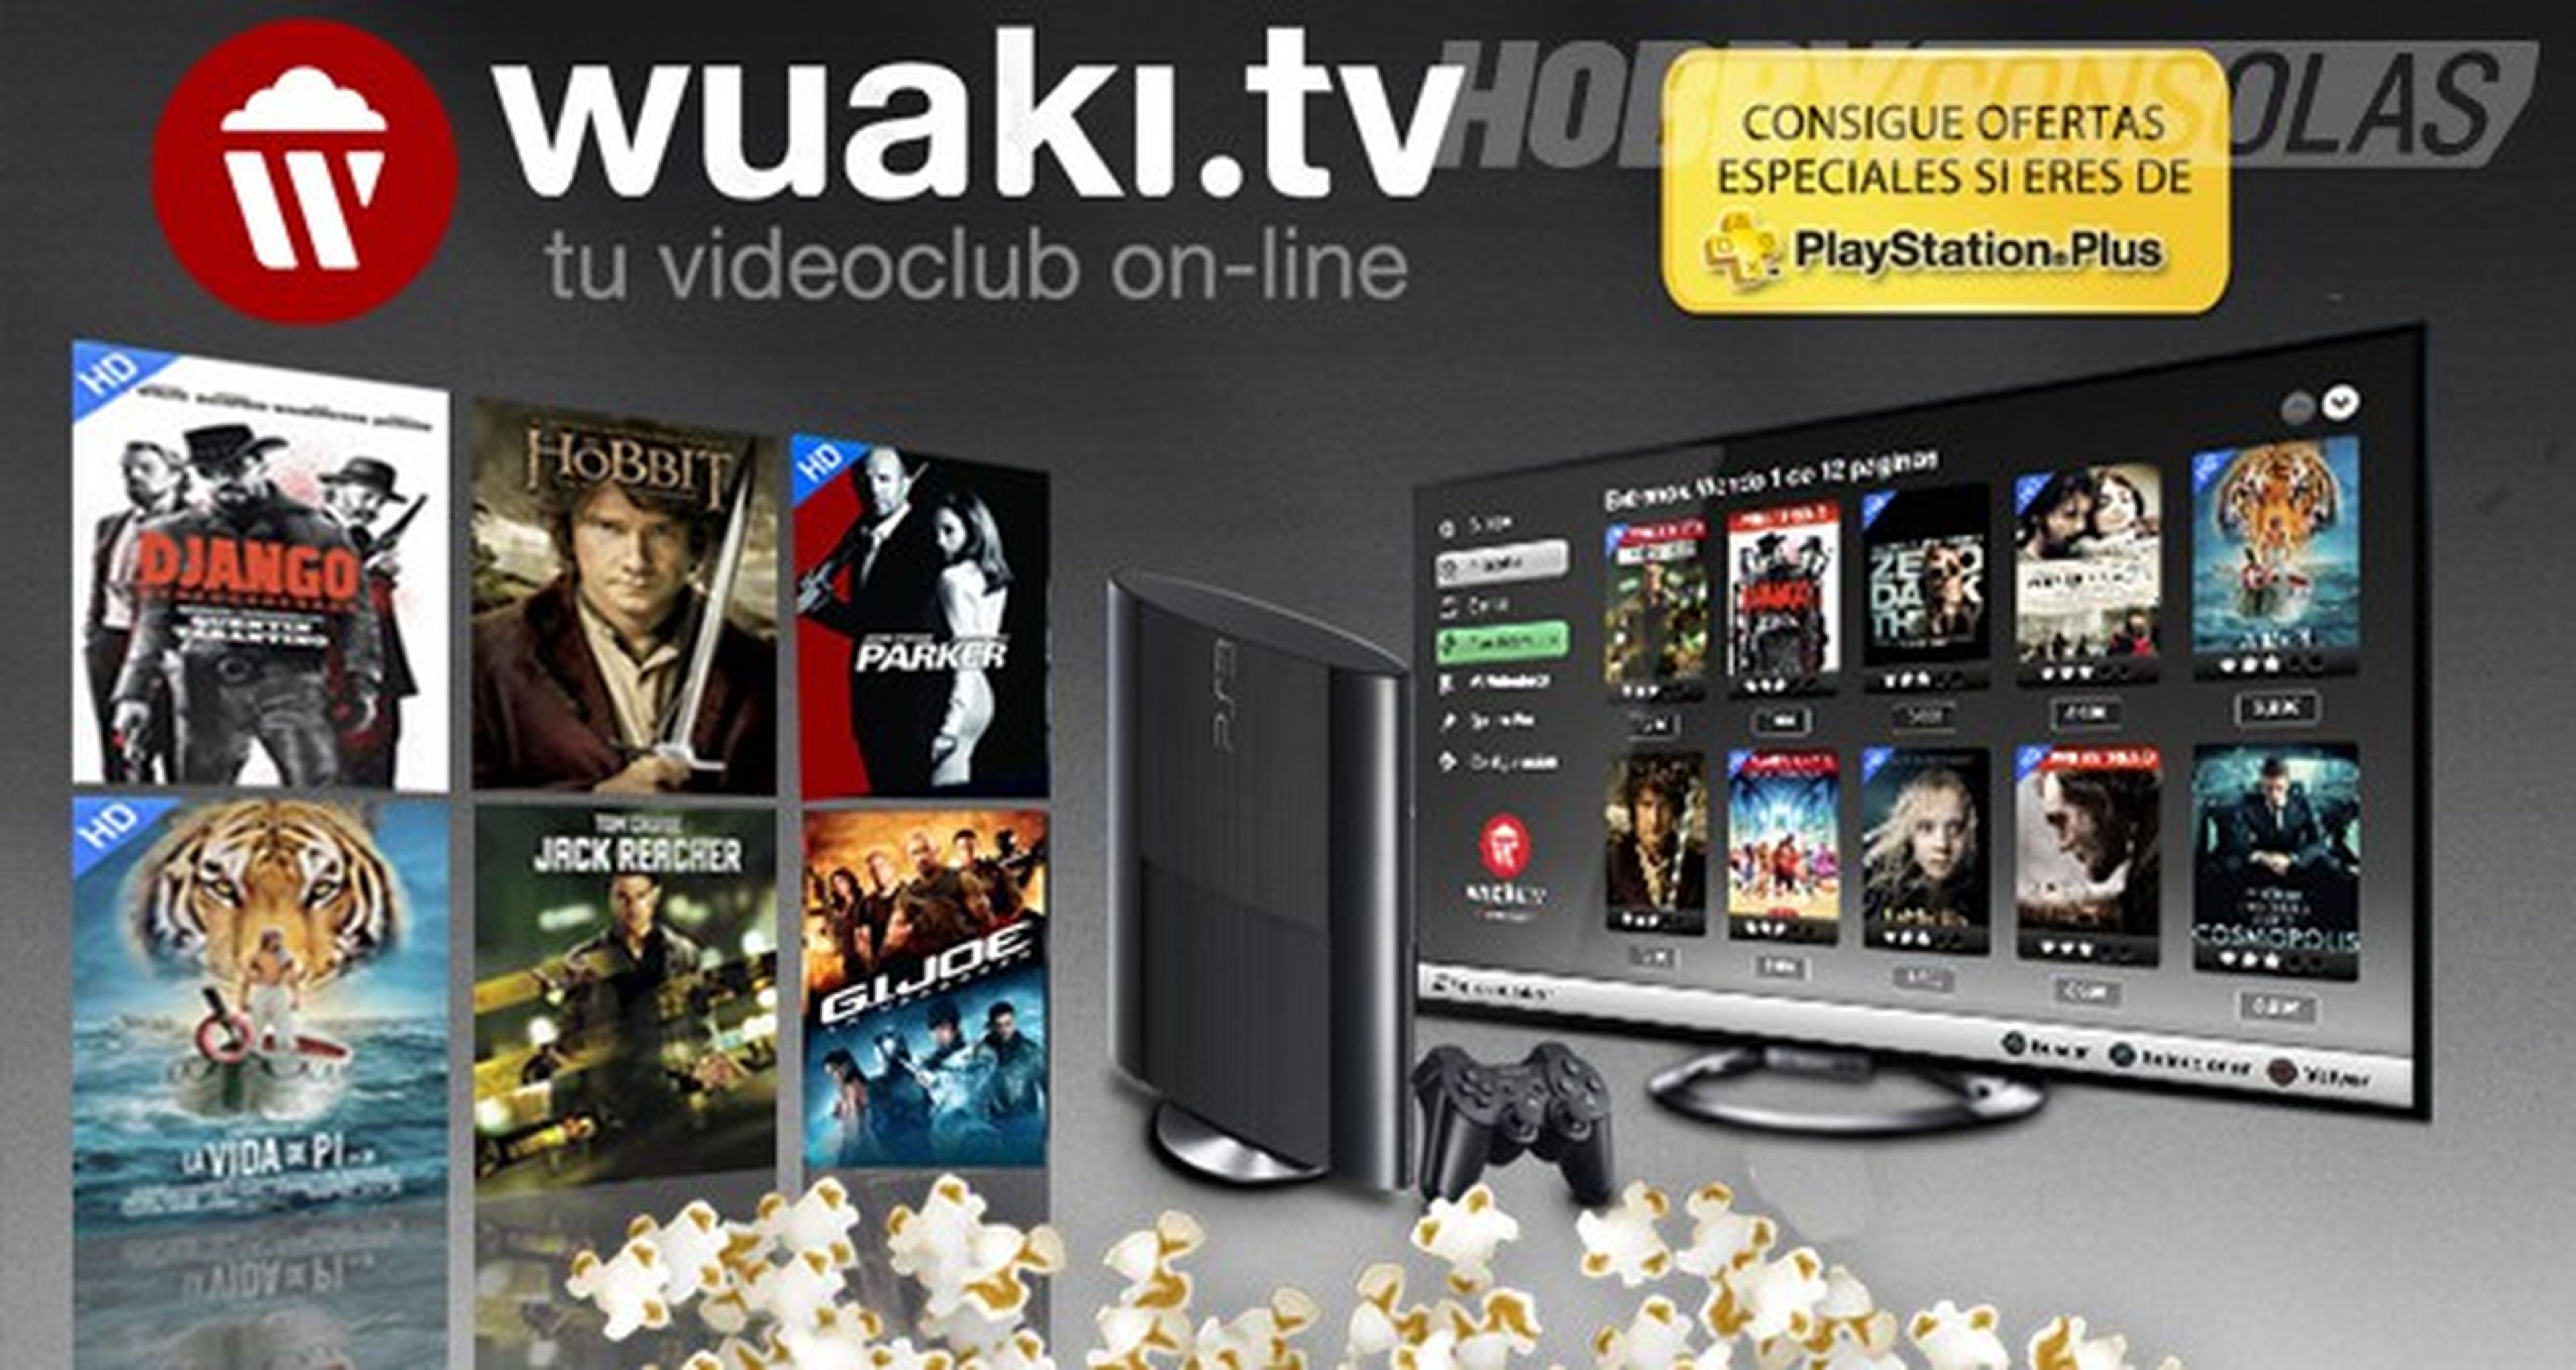 Wuaki.tv llega a PlayStation 3